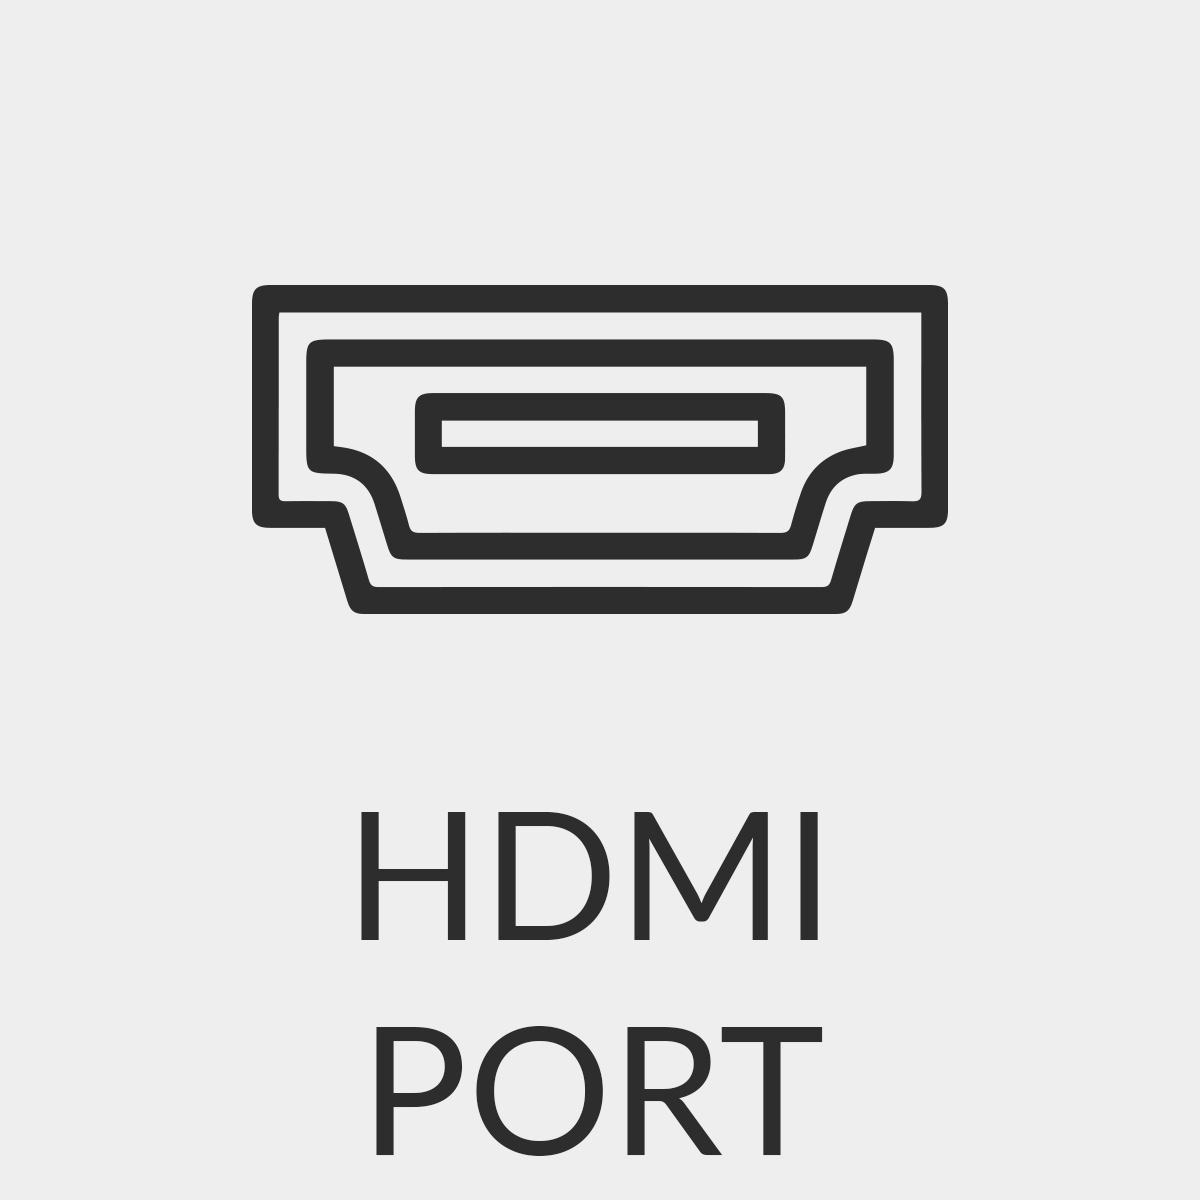 Gniazdo HDMI, wysoka jakość obrazu i dźwięku, kompatybilność urządzeń, 4K@60Hz